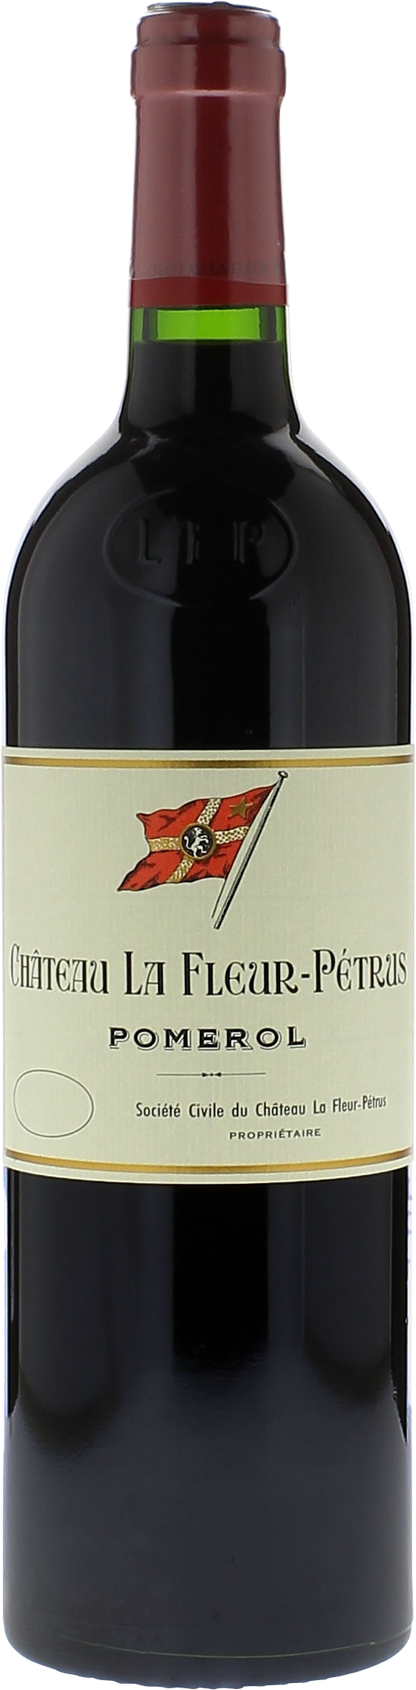 Château La Fleur-Pétrus 2016 Pomerol Rouge CBO 1X75cl